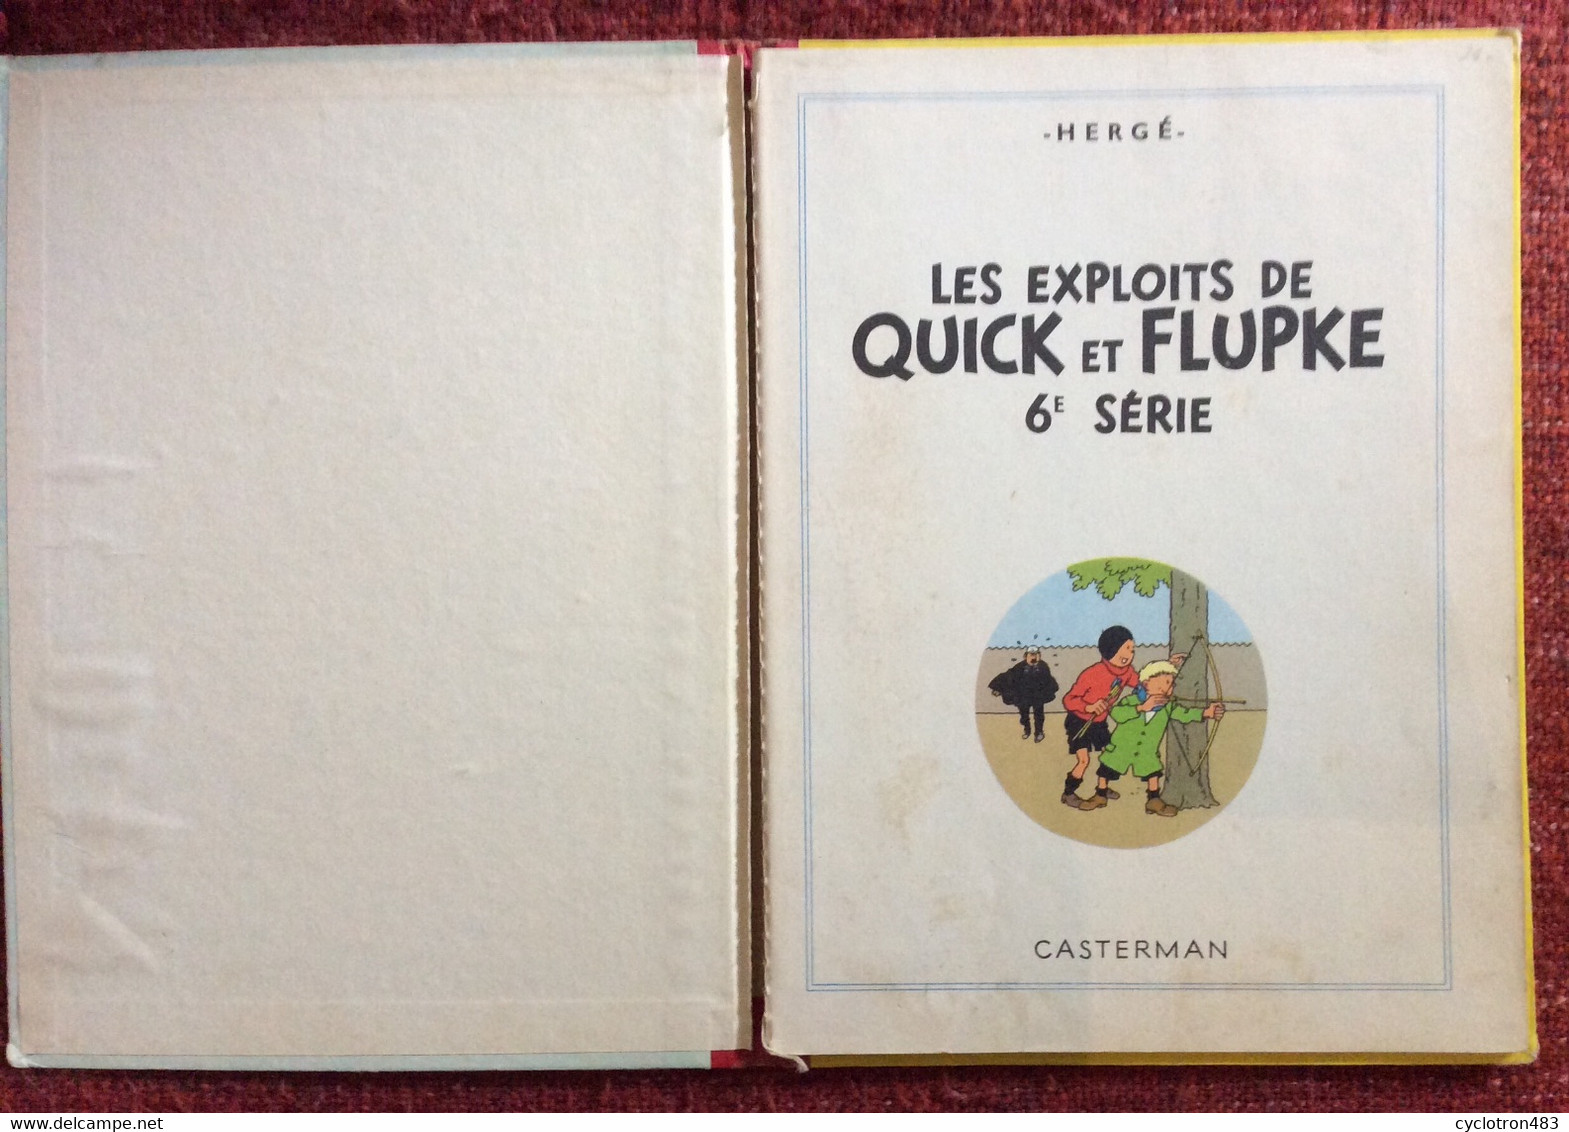 Les Exploits De Quick Et Flupke 6ème Série. - Hergé